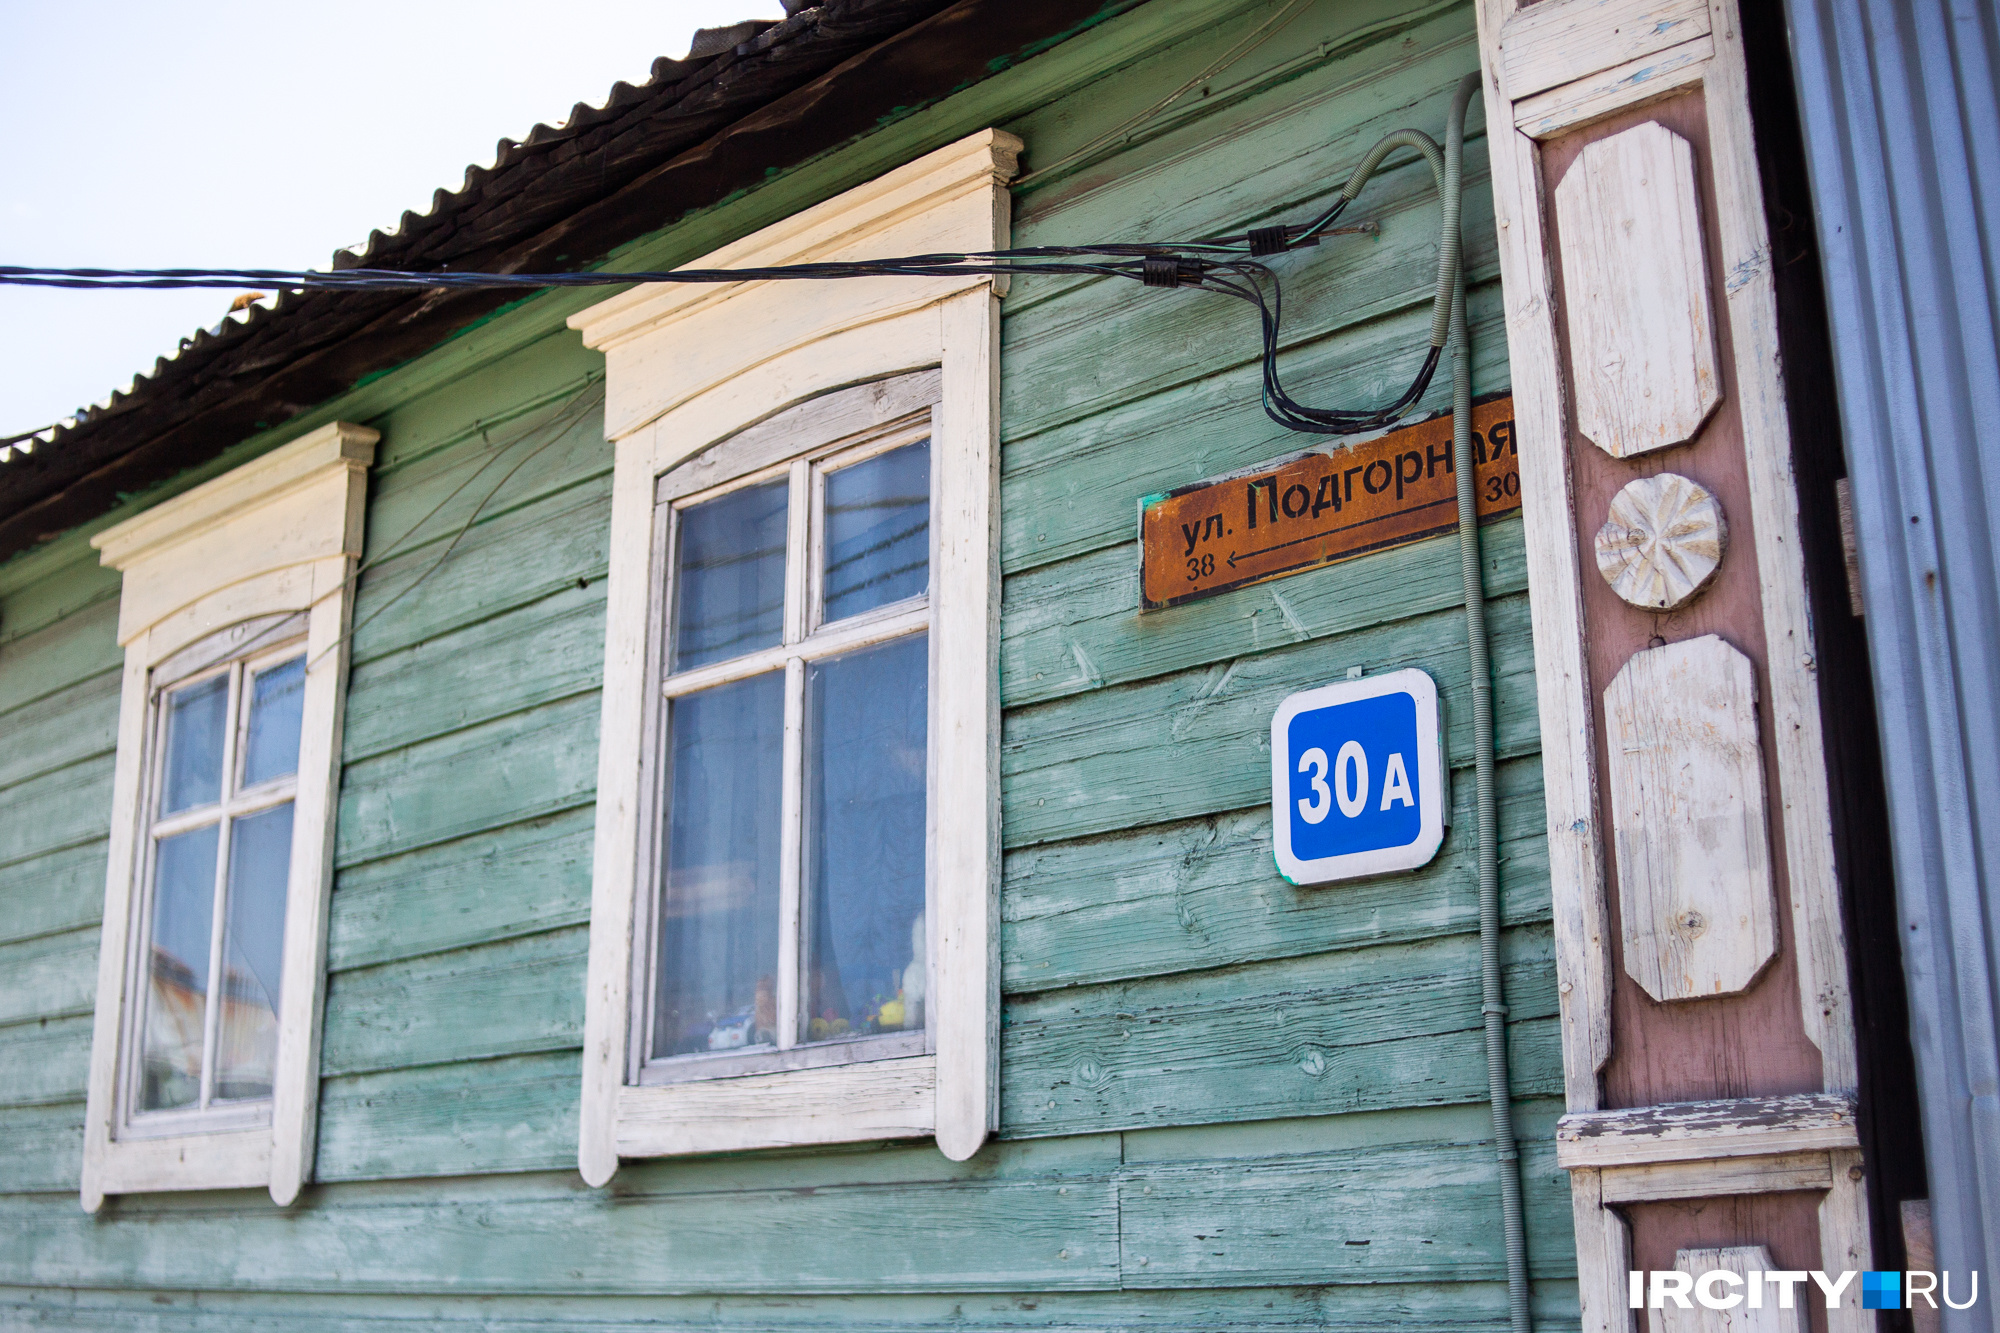 Улица Подгорная — одна из «заповедных» в Иркутске. Здесь сохранились дома, которые возводились еще до пожаров 1879 года, уничтоживших значительную часть города